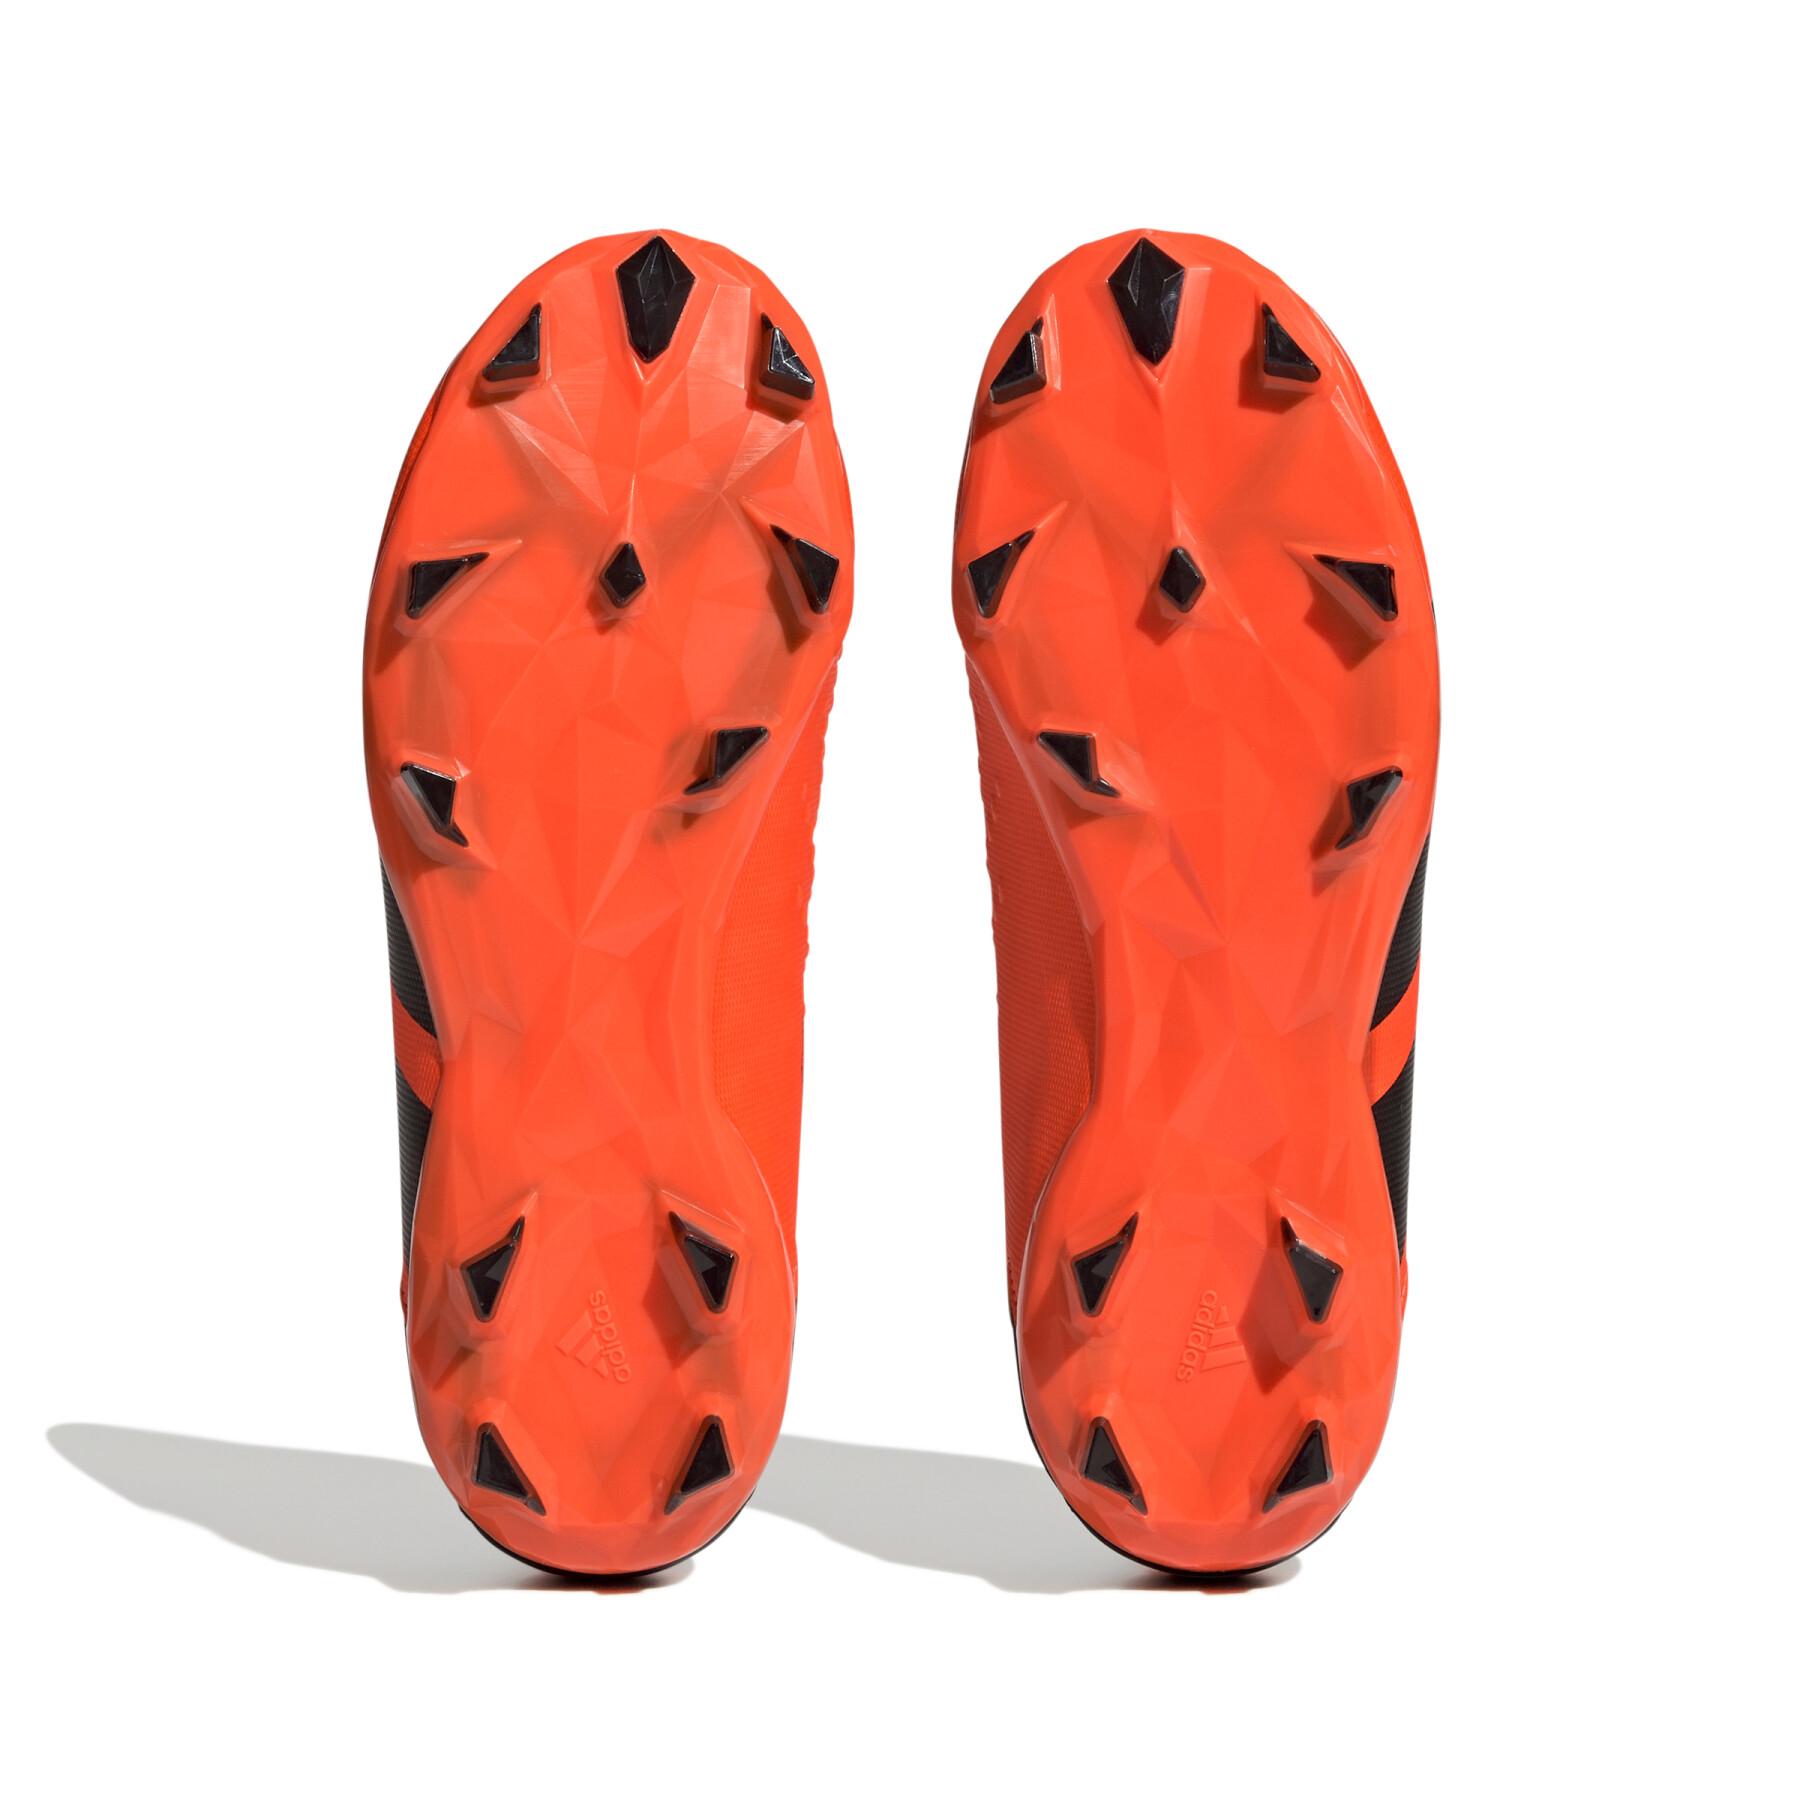 Dziecięce buty piłkarskie bez sznurówek adidas Predator Accuracy.3 FG Heatspawn Pack